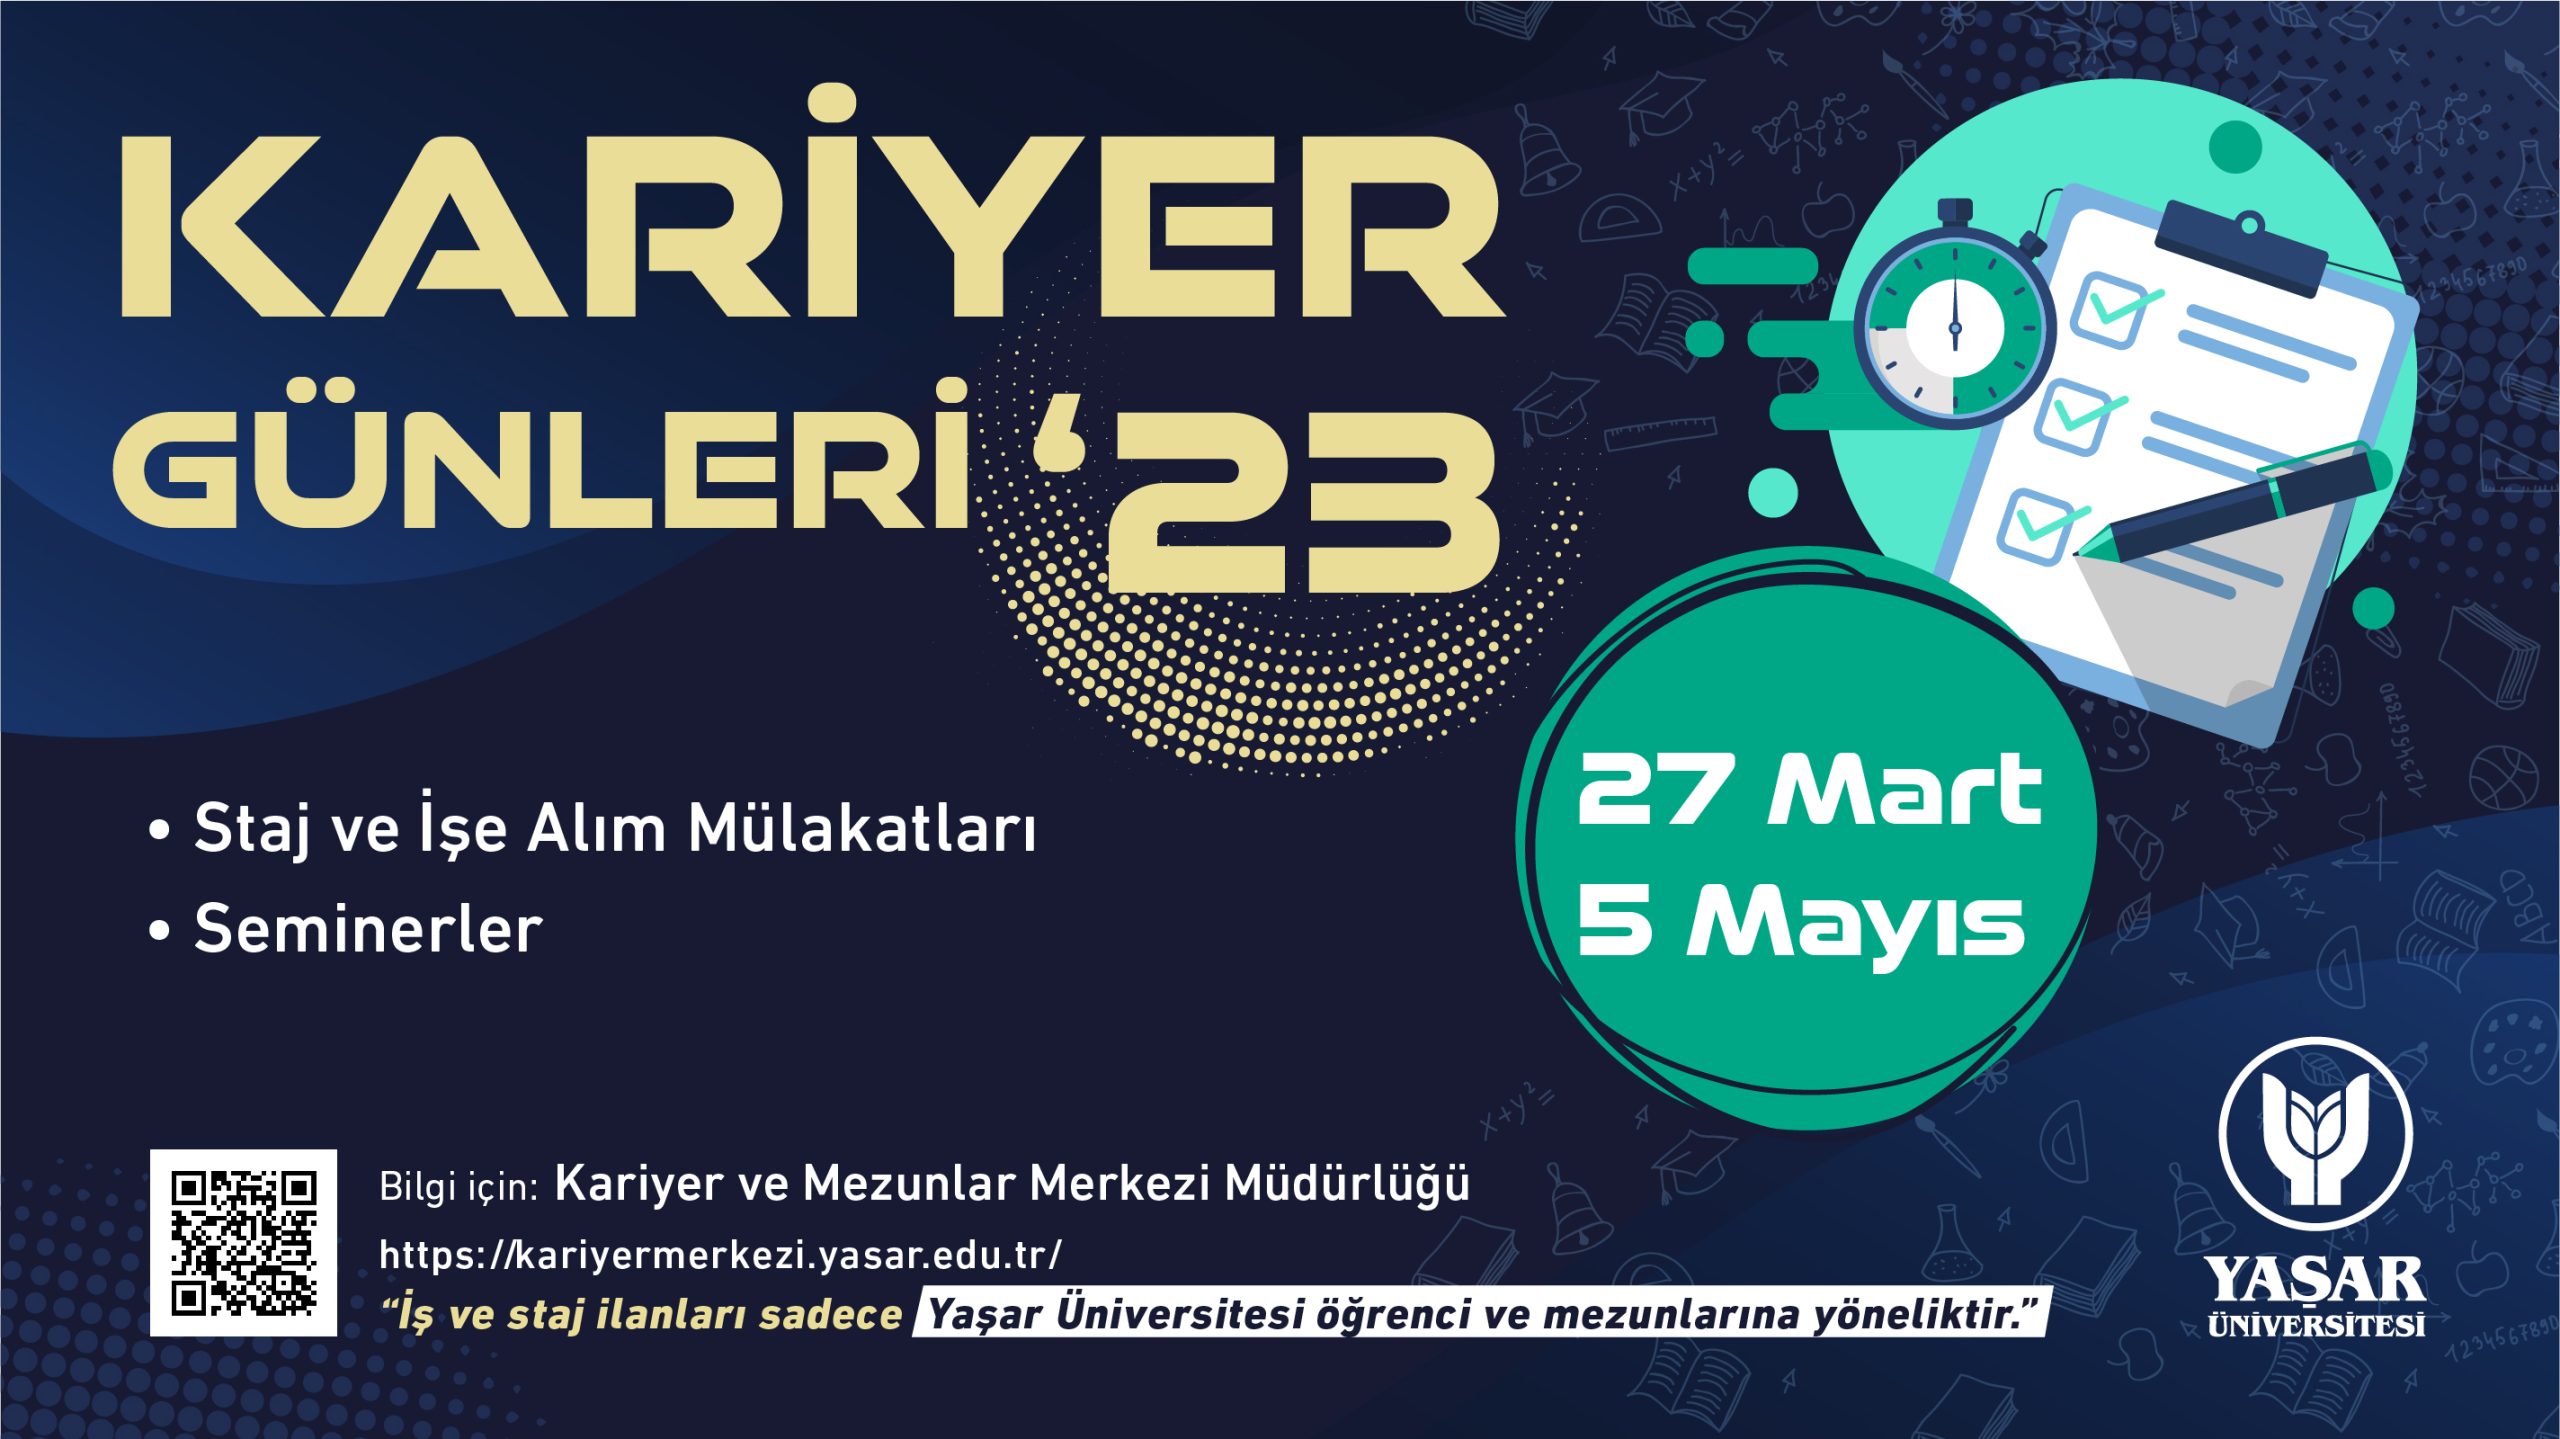 Yaşar Üniversitesi Kariyer Günleri 2023 / Yaşar University Career Days 2023